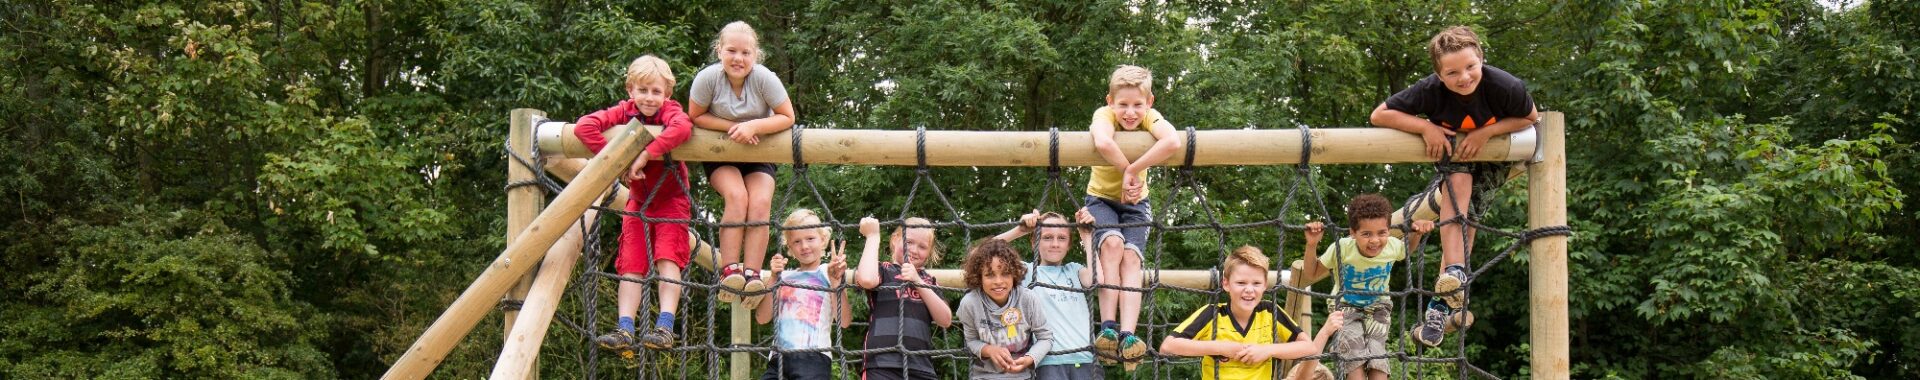 De leukste kinderfeestjes vier je bij Outdoorpark Alkmaar